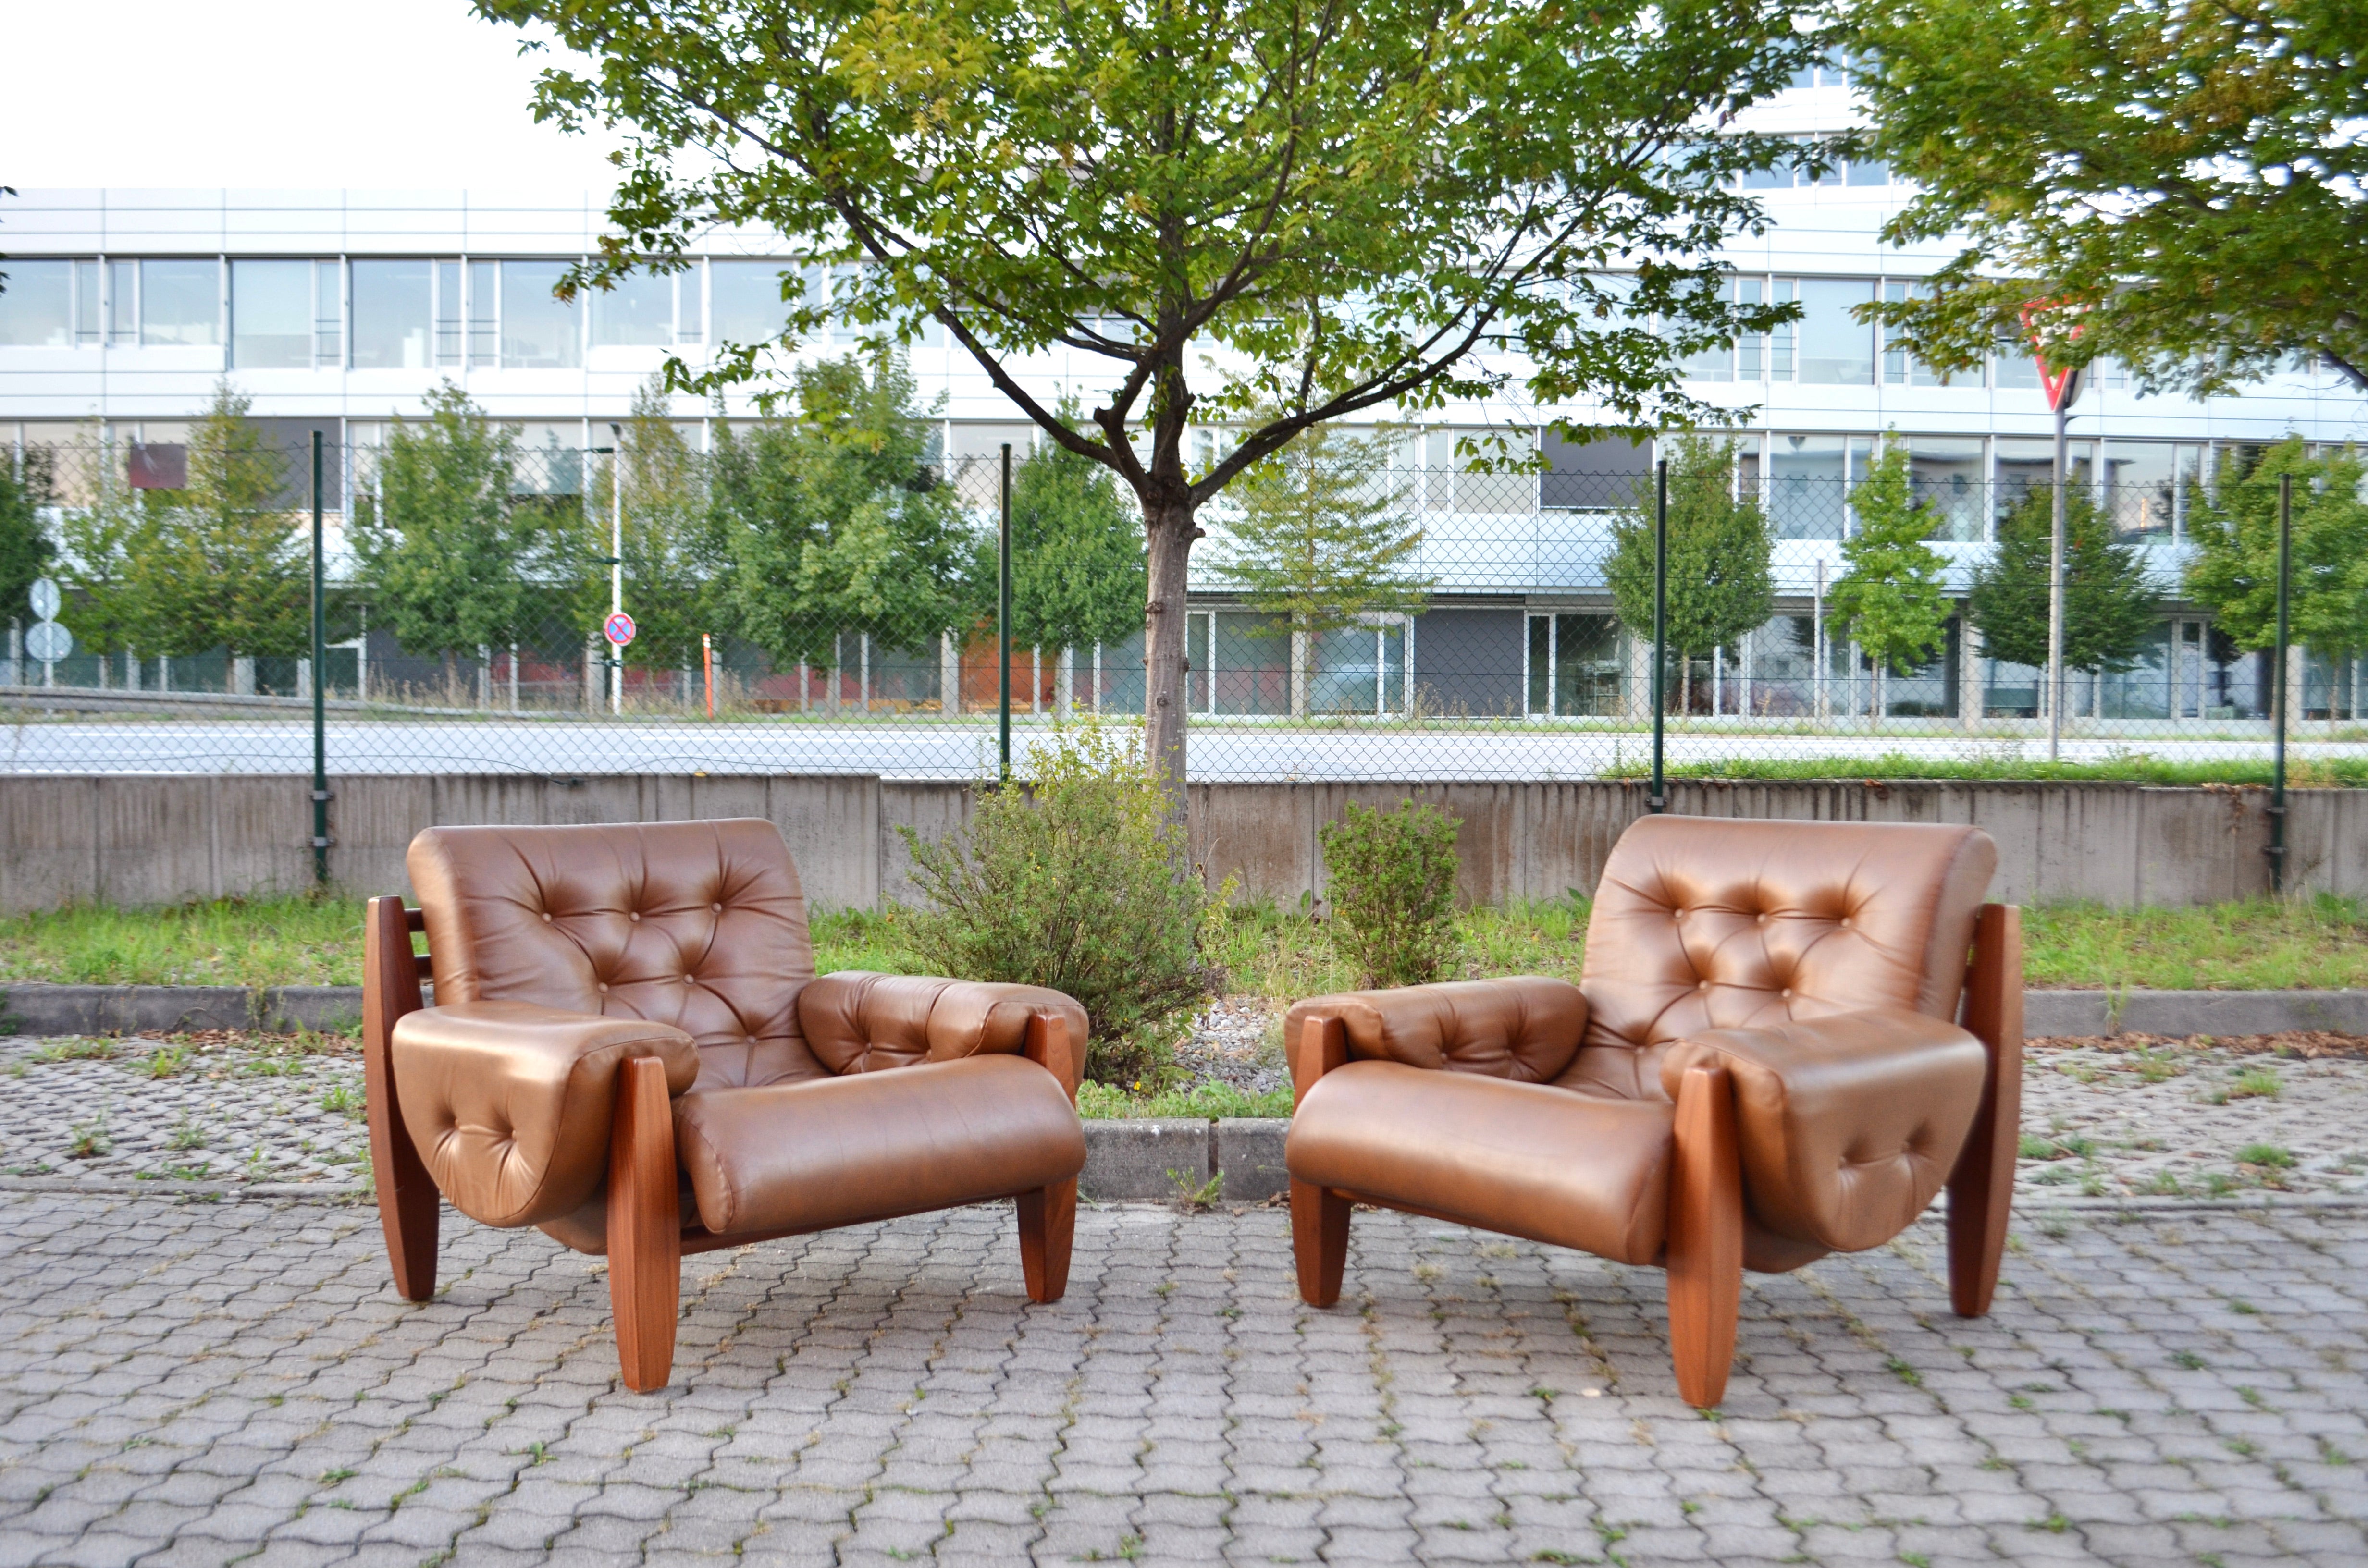 Dieser große Lounge-Sessel stammt aus den 1970er Jahren.
Er ist aus Pau-Ferro-Holz und cognacfarbenem Anilinleder gefertigt.
Unter dem Kissen befinden sich Riemen aus Sattelleder.
Das Design verweist auf die Arbeit von Jean Gillon, aber die